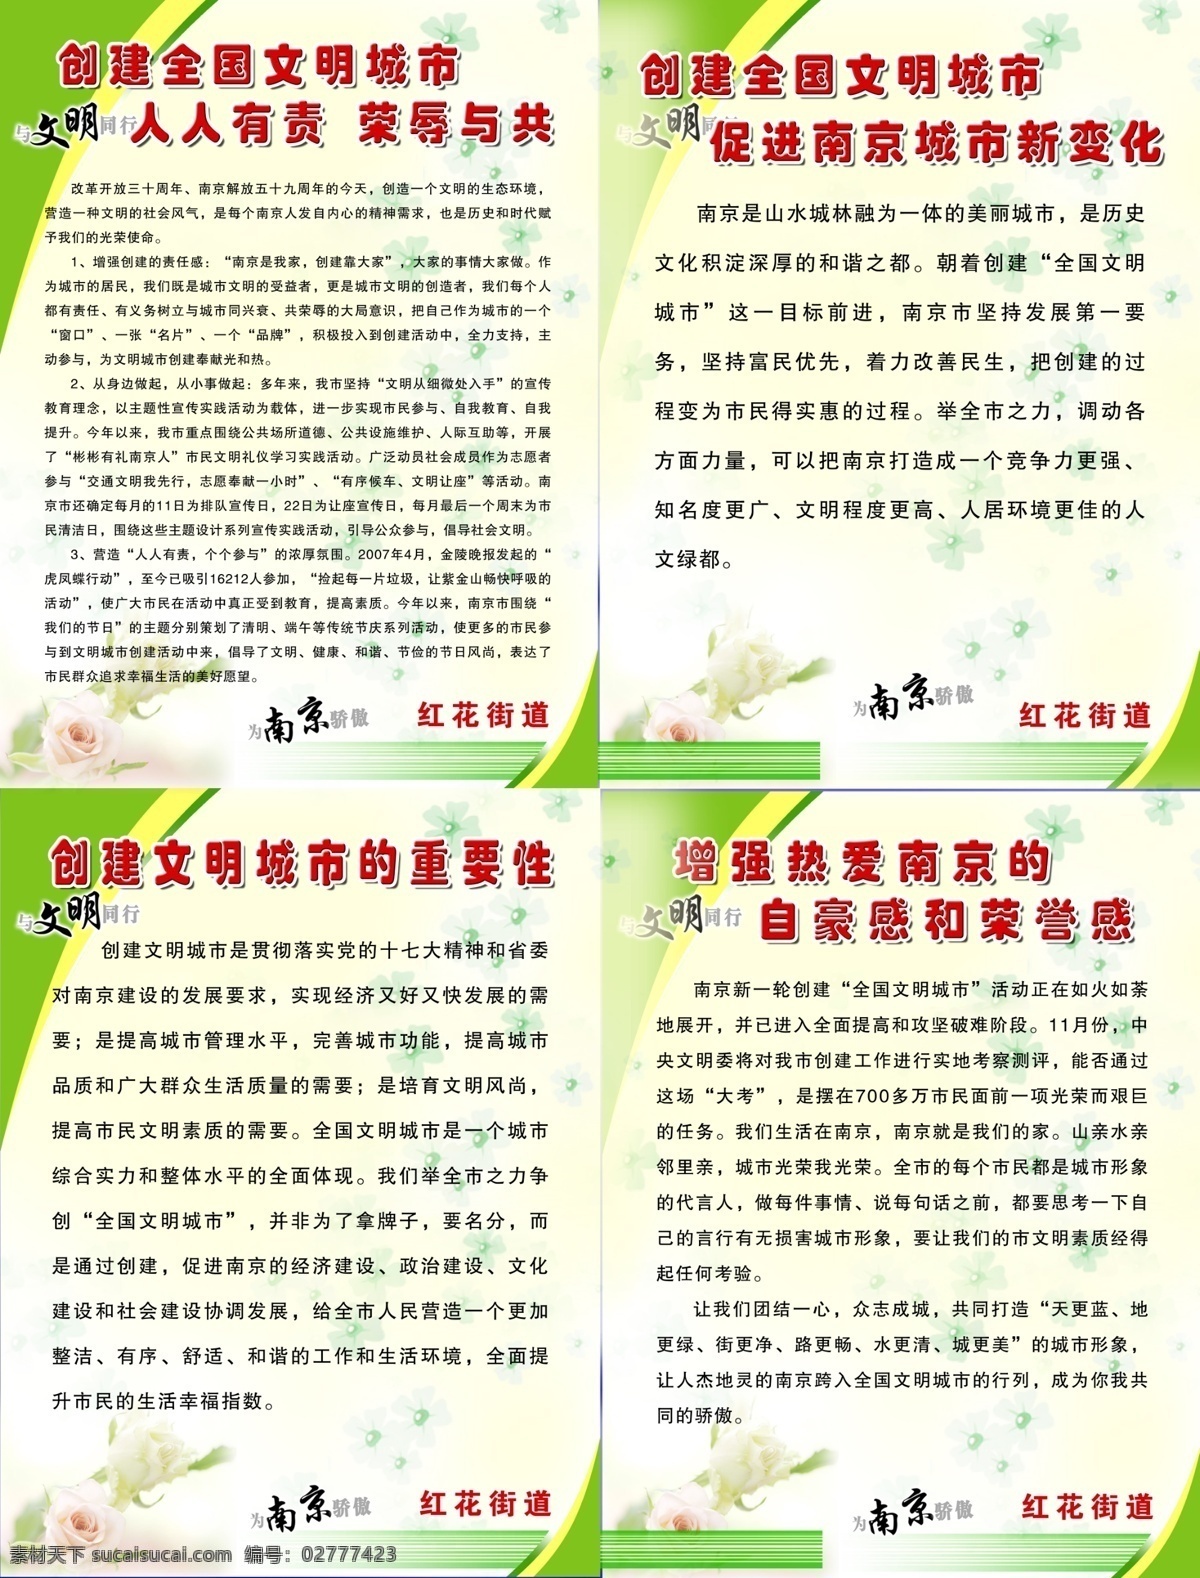 创建文明城市 南京 文明 展板 展板模板 海报底图 海报 广告设计模板 源文件 分层素材